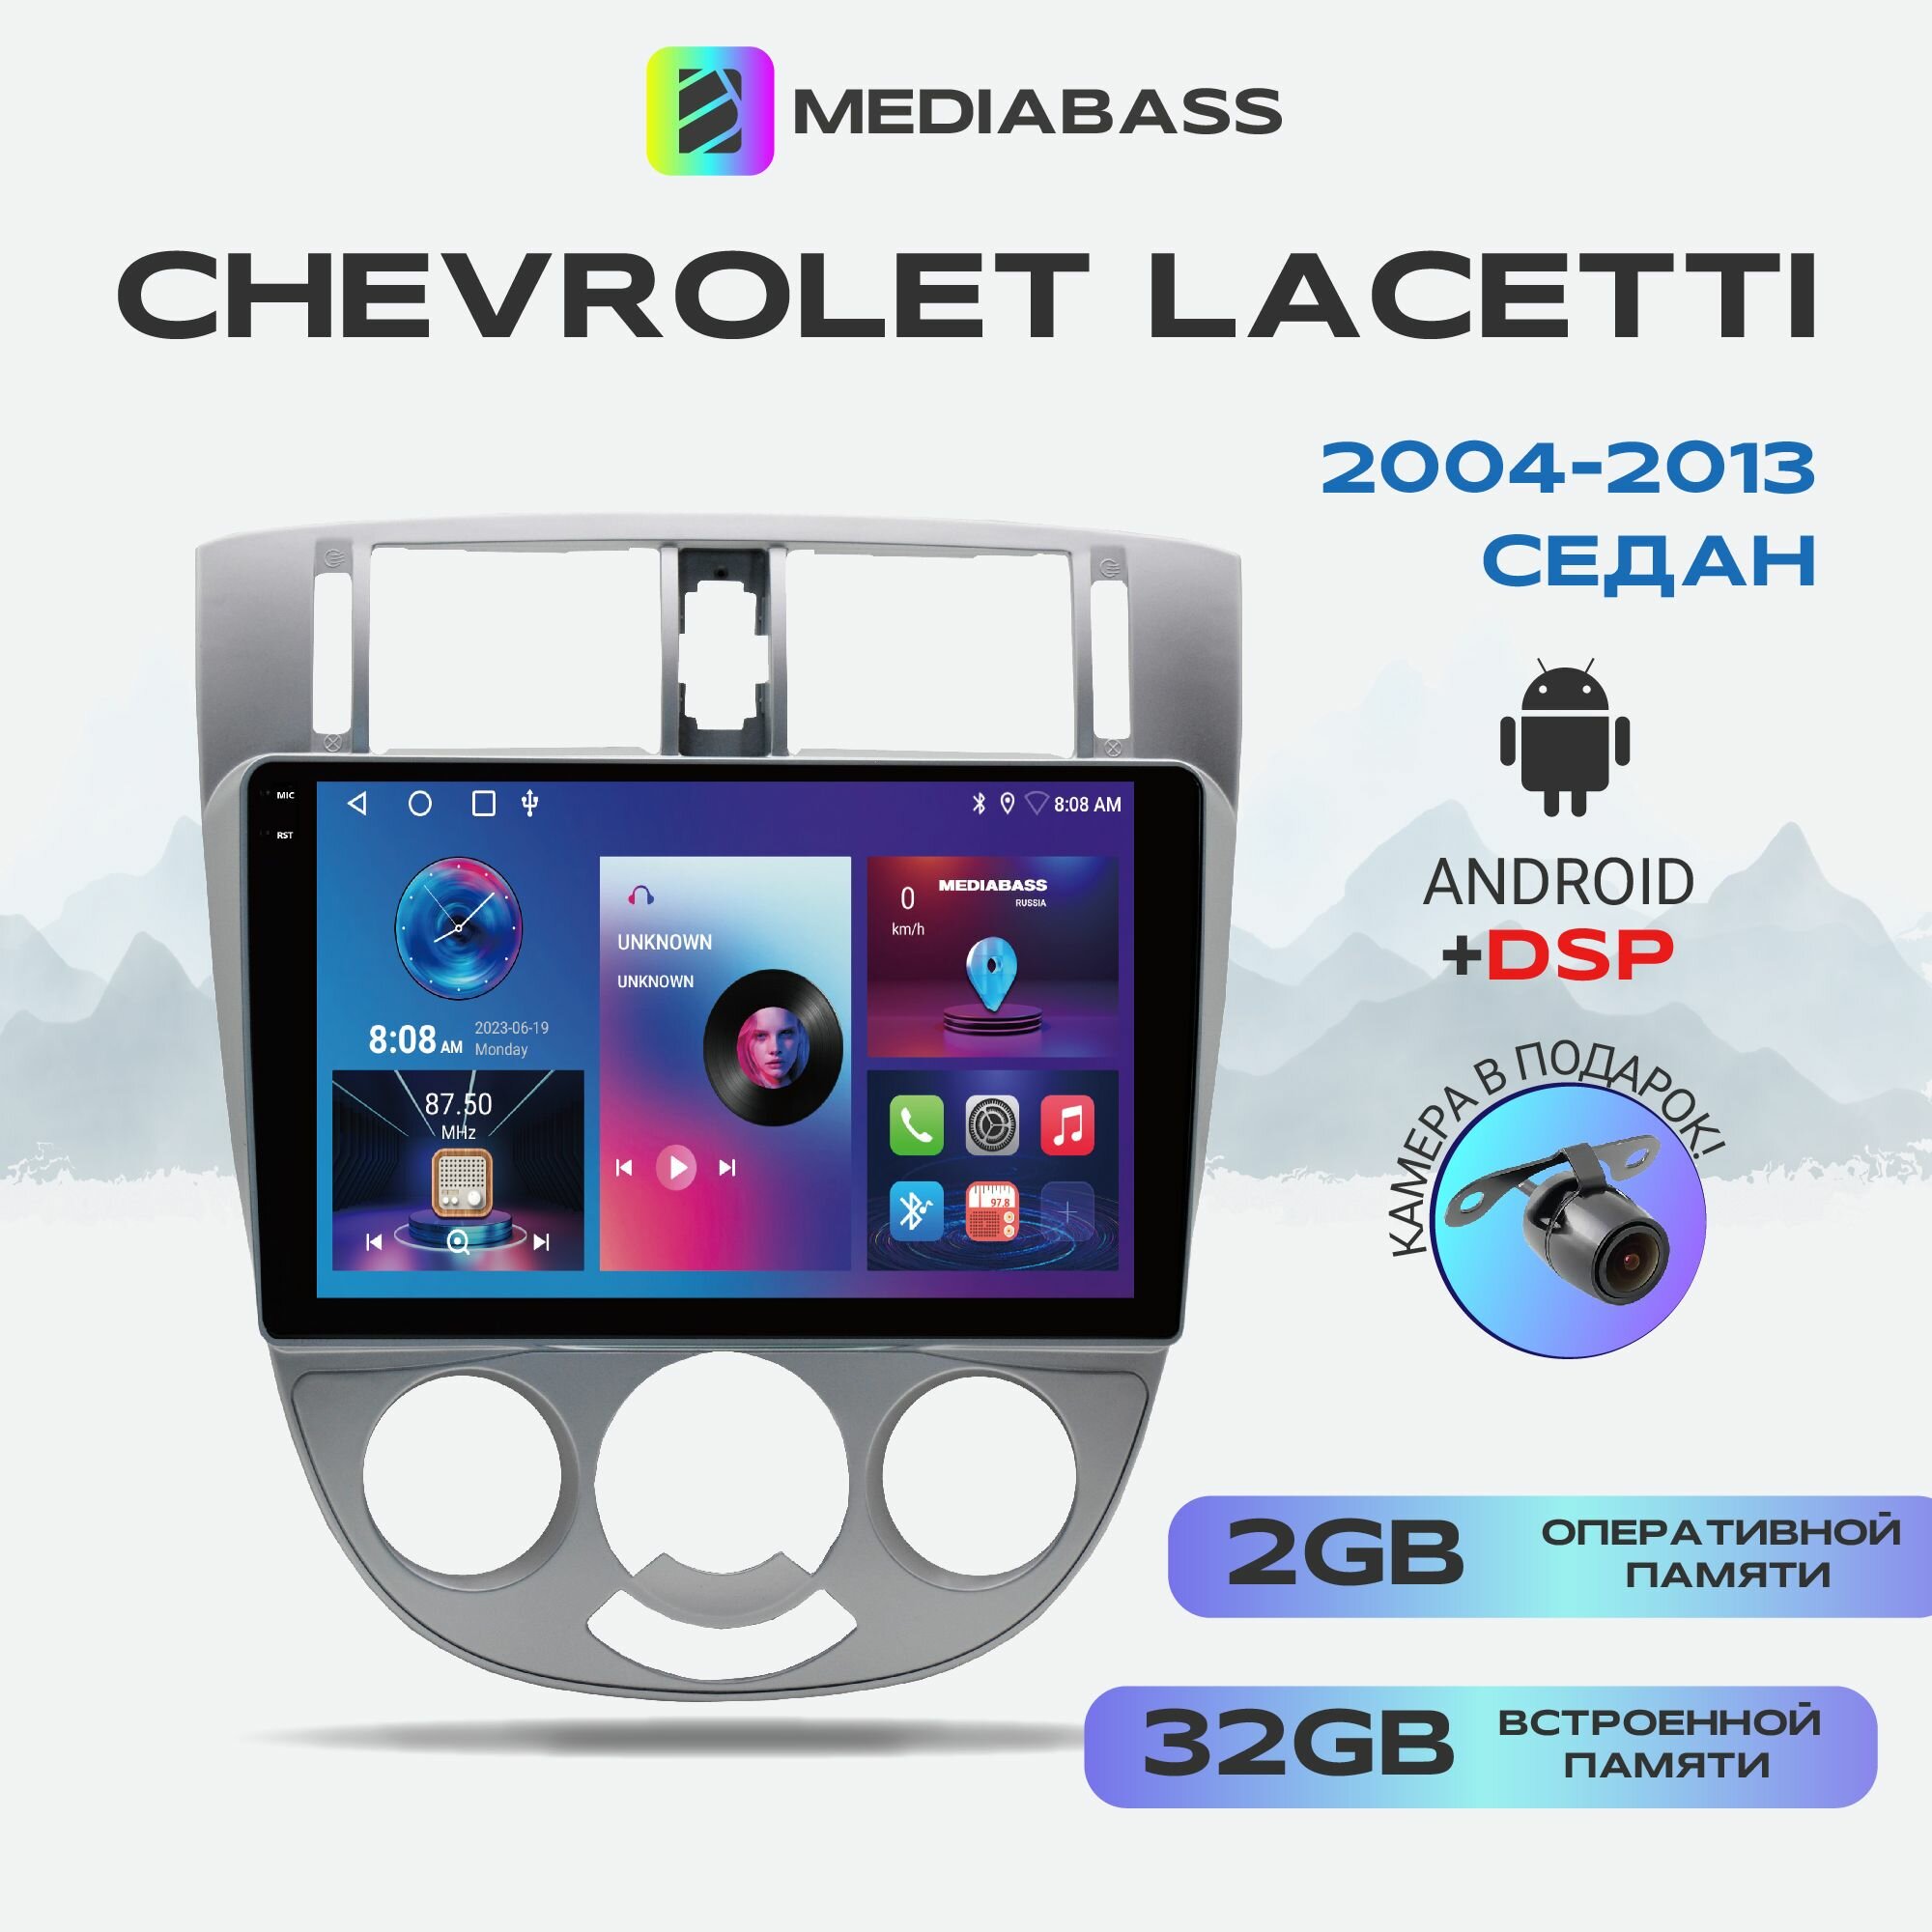 Автомагнитола Mediabass PRO Chevrolet Lacetti седан, 2/32ГБ, Android 12 / Шевроле Лачетти седан, 4-ядерный процессор, QLED экран с разрешением 1280*720, DSP, чип-усилитель YD7388